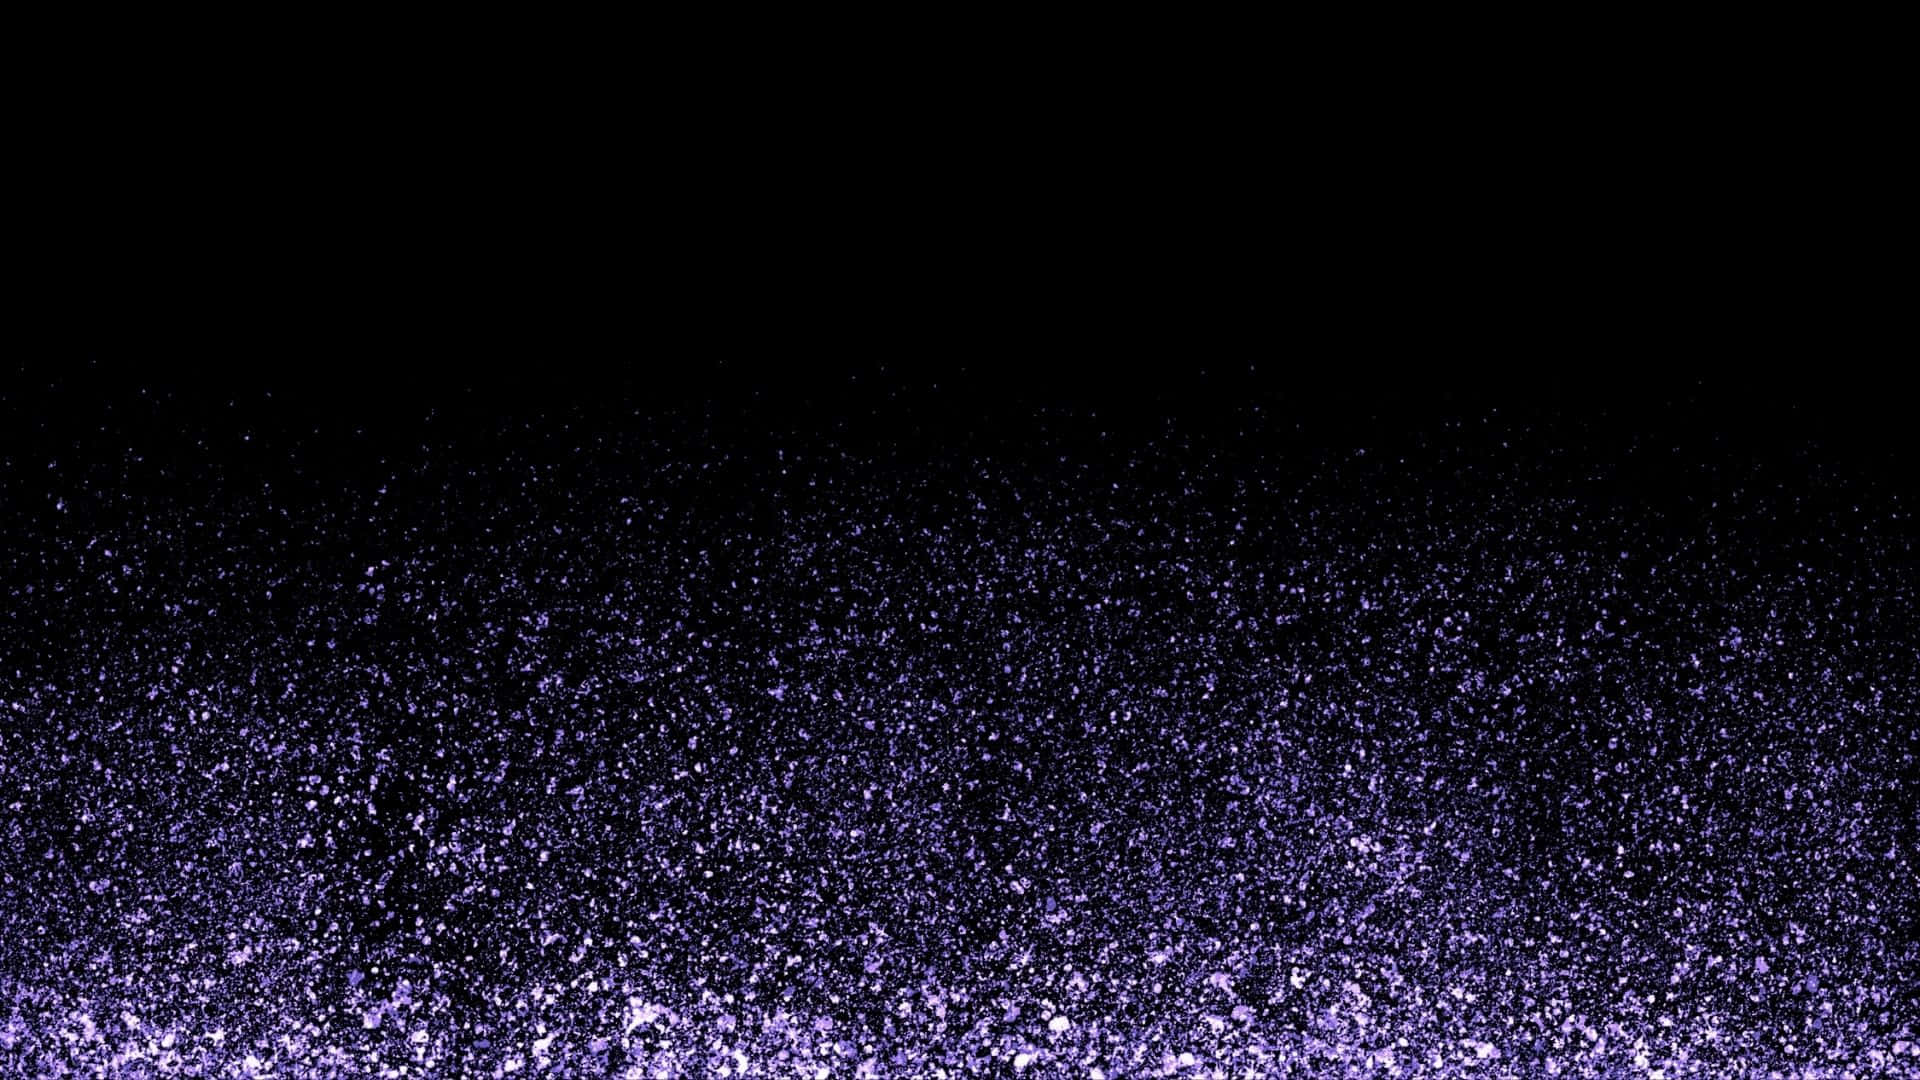 Capturala Belleza Y El Destello De La Noche Con Purple Glitter. Fondo de pantalla